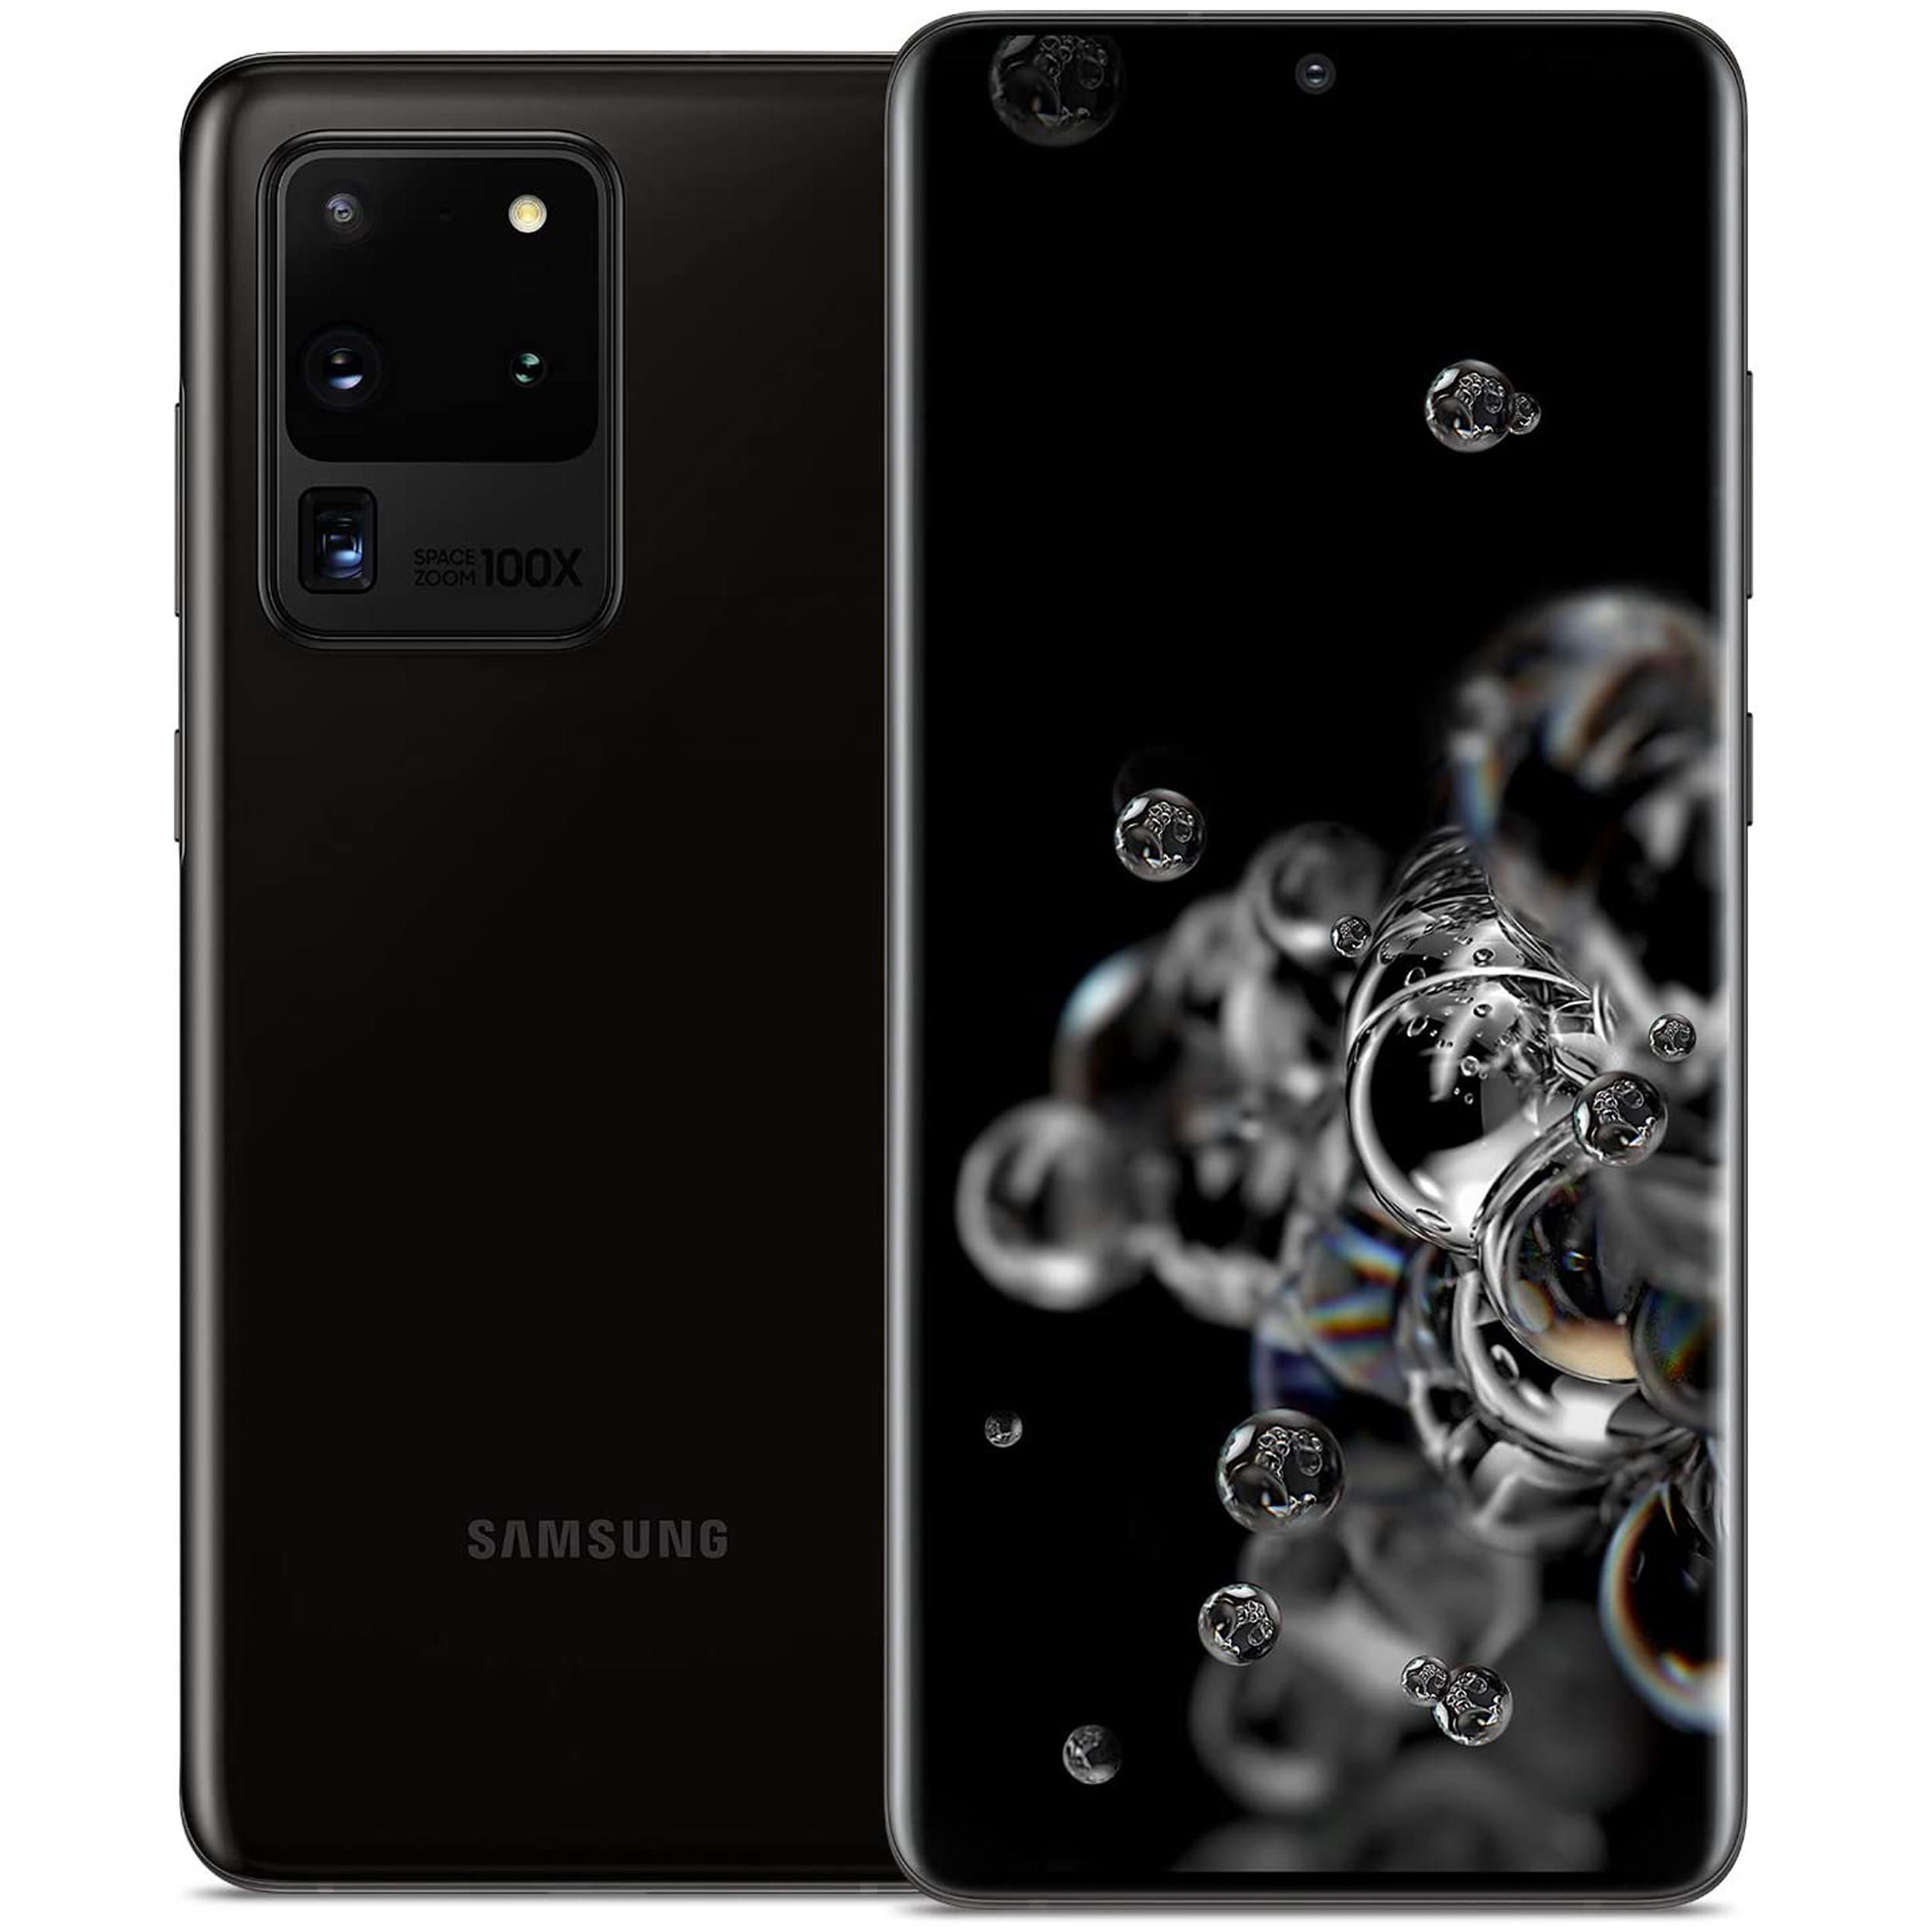 آنباکس گوشی موبایل سامسونگ مدل Galaxy S20 Ultra SM-G988B/DS دو سیم کارت ظرفیت 128 گیگابایت توسط سمیه سربلند در تاریخ ۲۱ مهر ۱۳۹۹